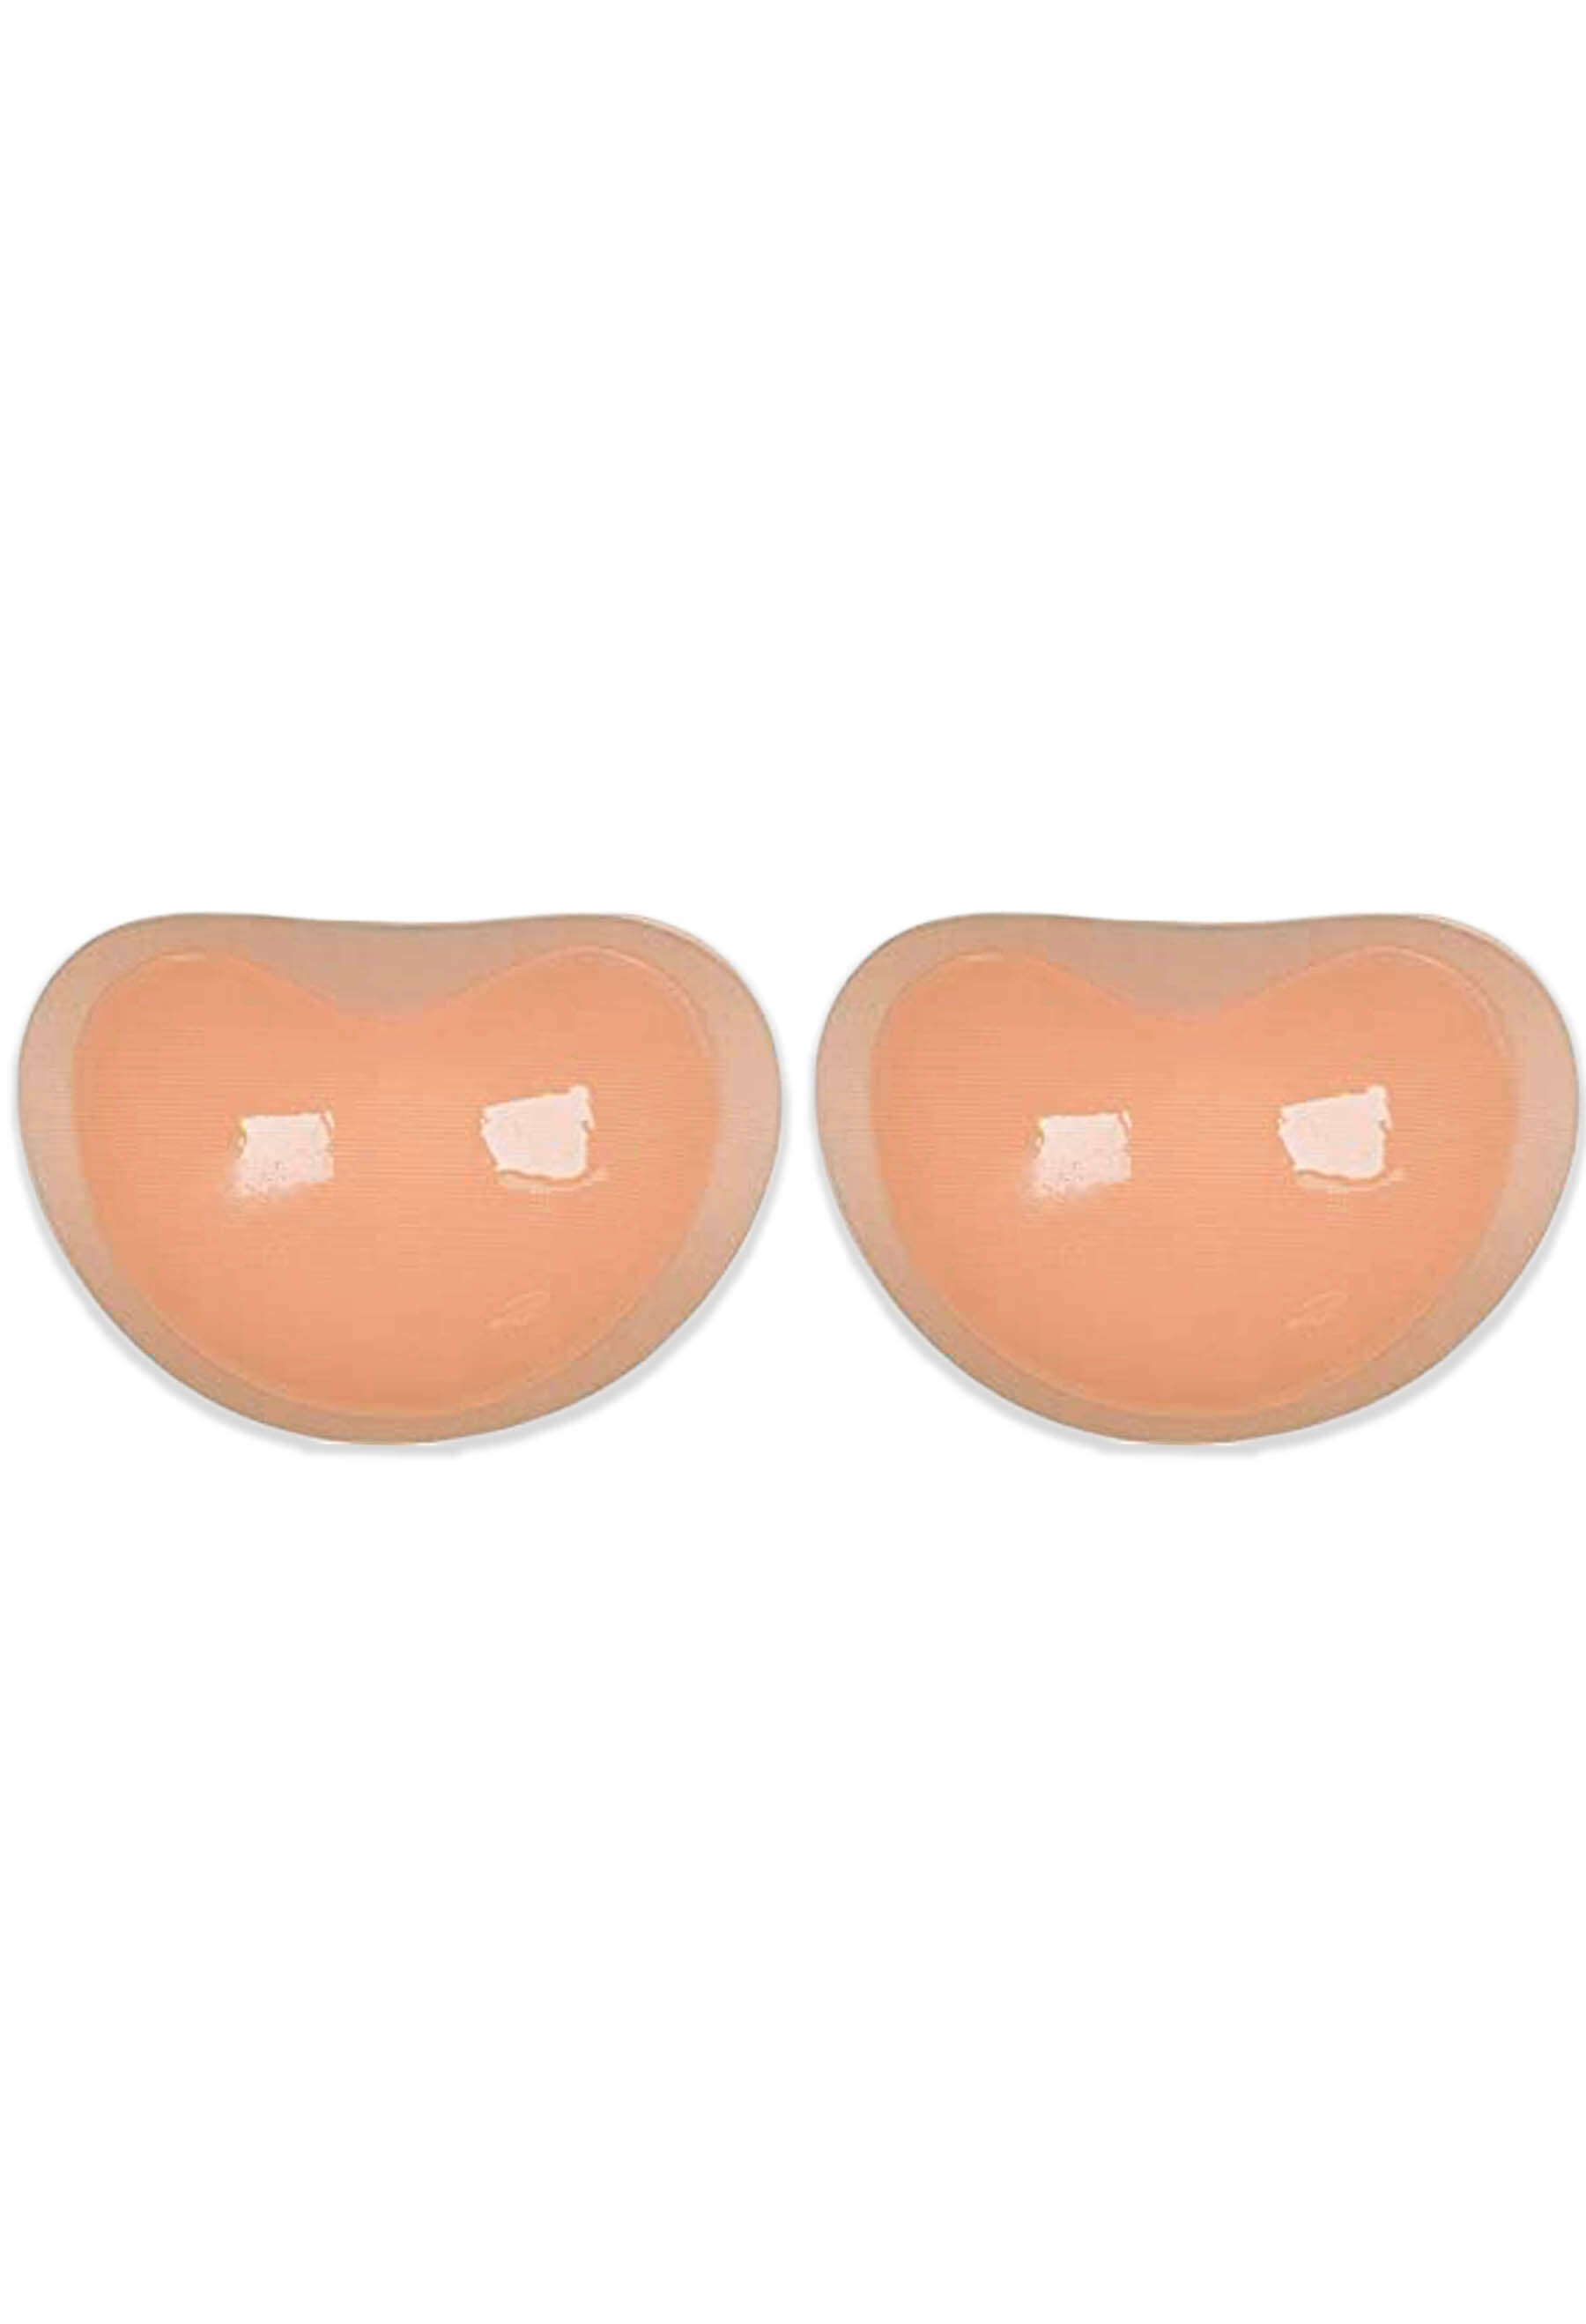 2 Pairs Bra Pads Adhesive Push Up Bra Inserts Pads Breast Enhancer For  Bikini Sports